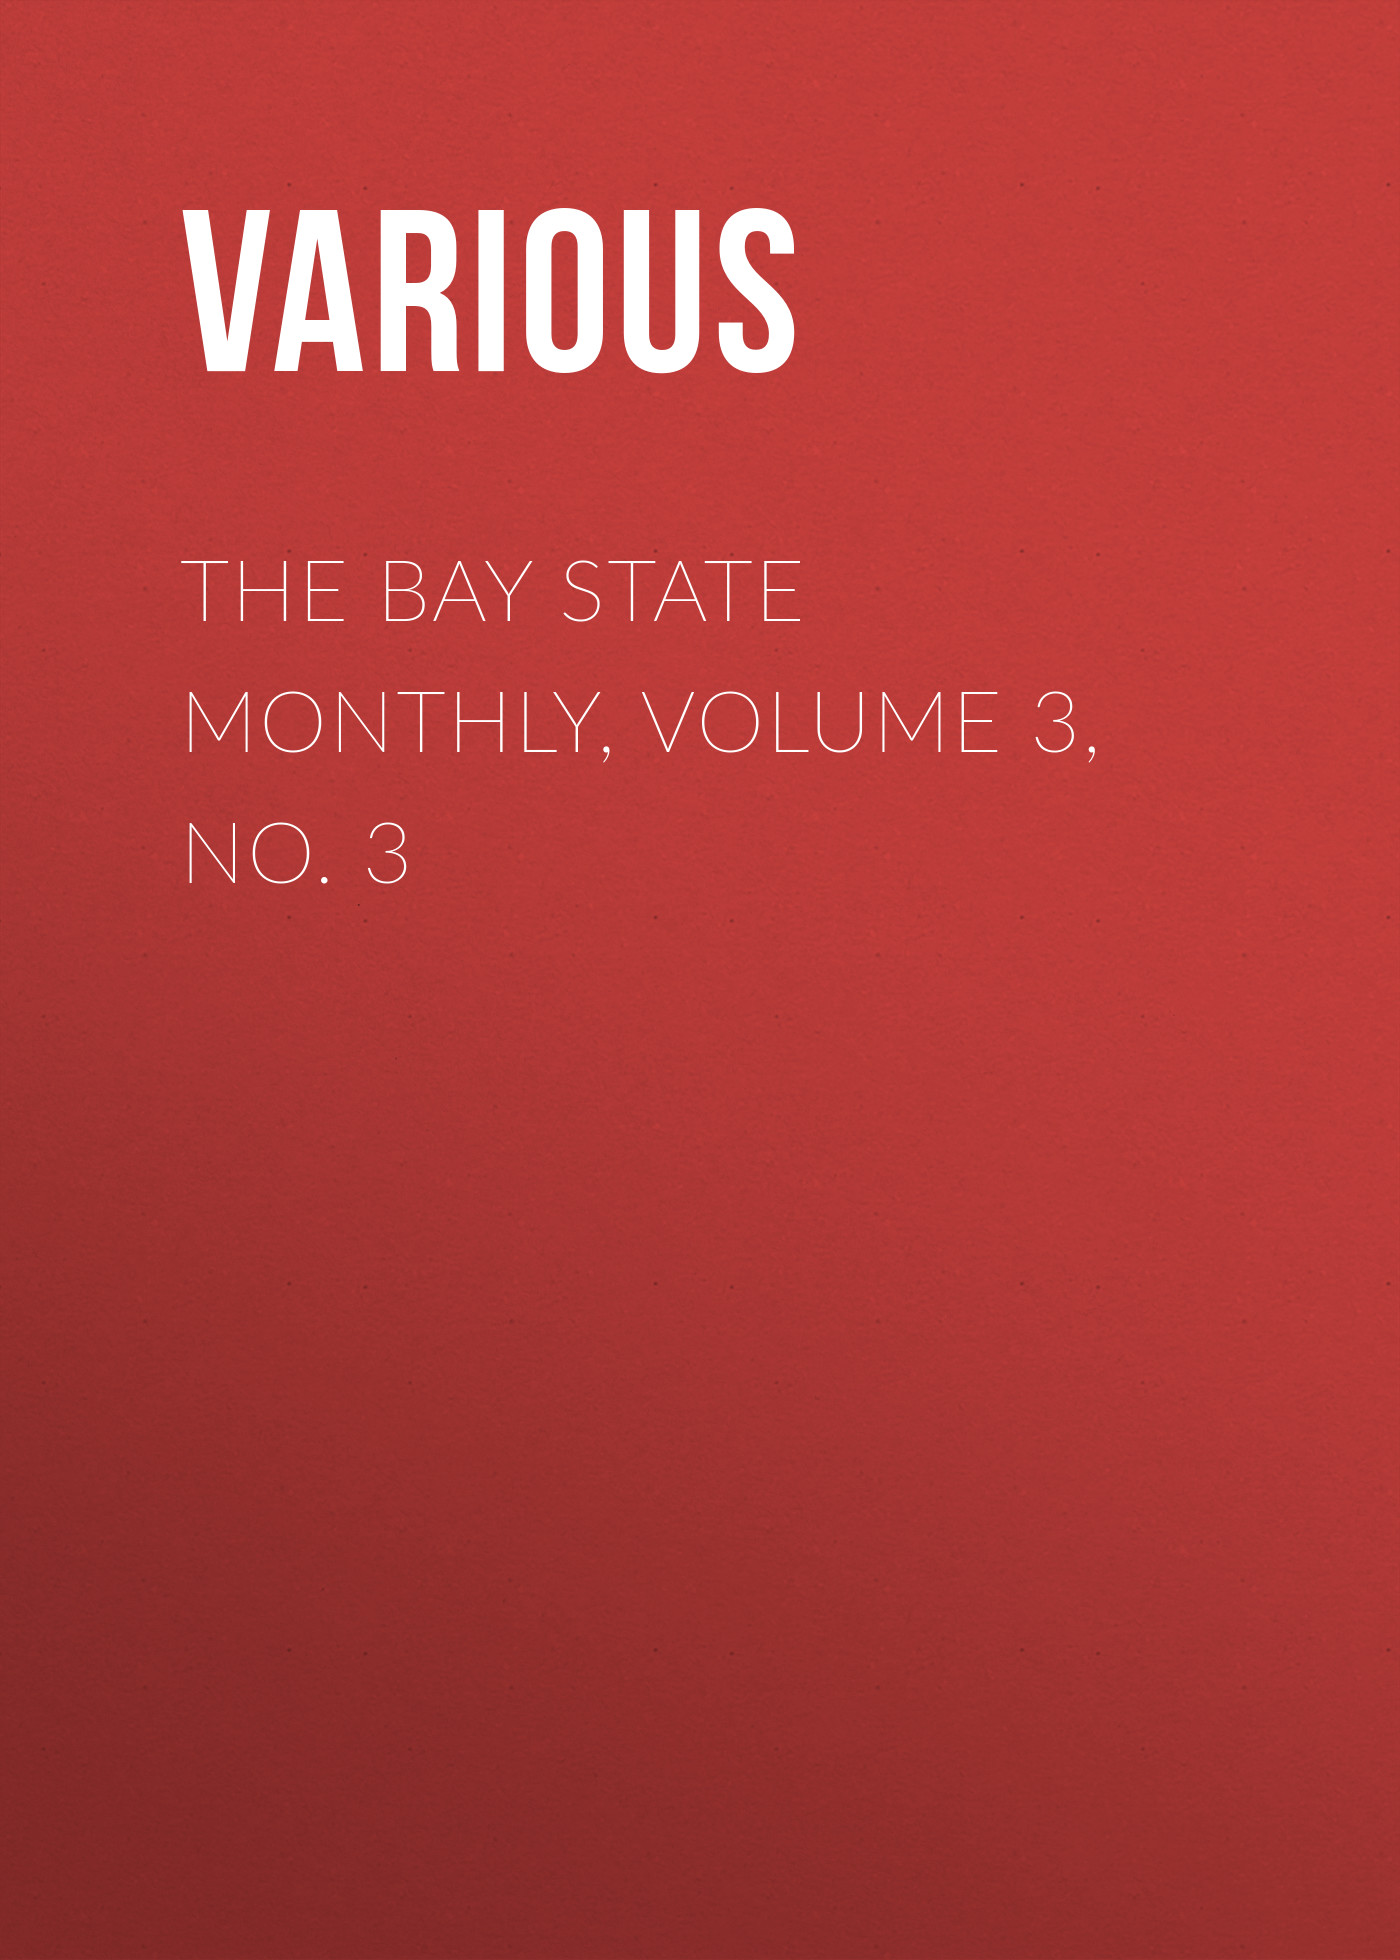 Книга The Bay State Monthly, Volume 3, No. 3 из серии , созданная  Various, может относится к жанру Зарубежная старинная литература, Журналы, Зарубежная образовательная литература. Стоимость электронной книги The Bay State Monthly, Volume 3, No. 3 с идентификатором 35502283 составляет 0 руб.